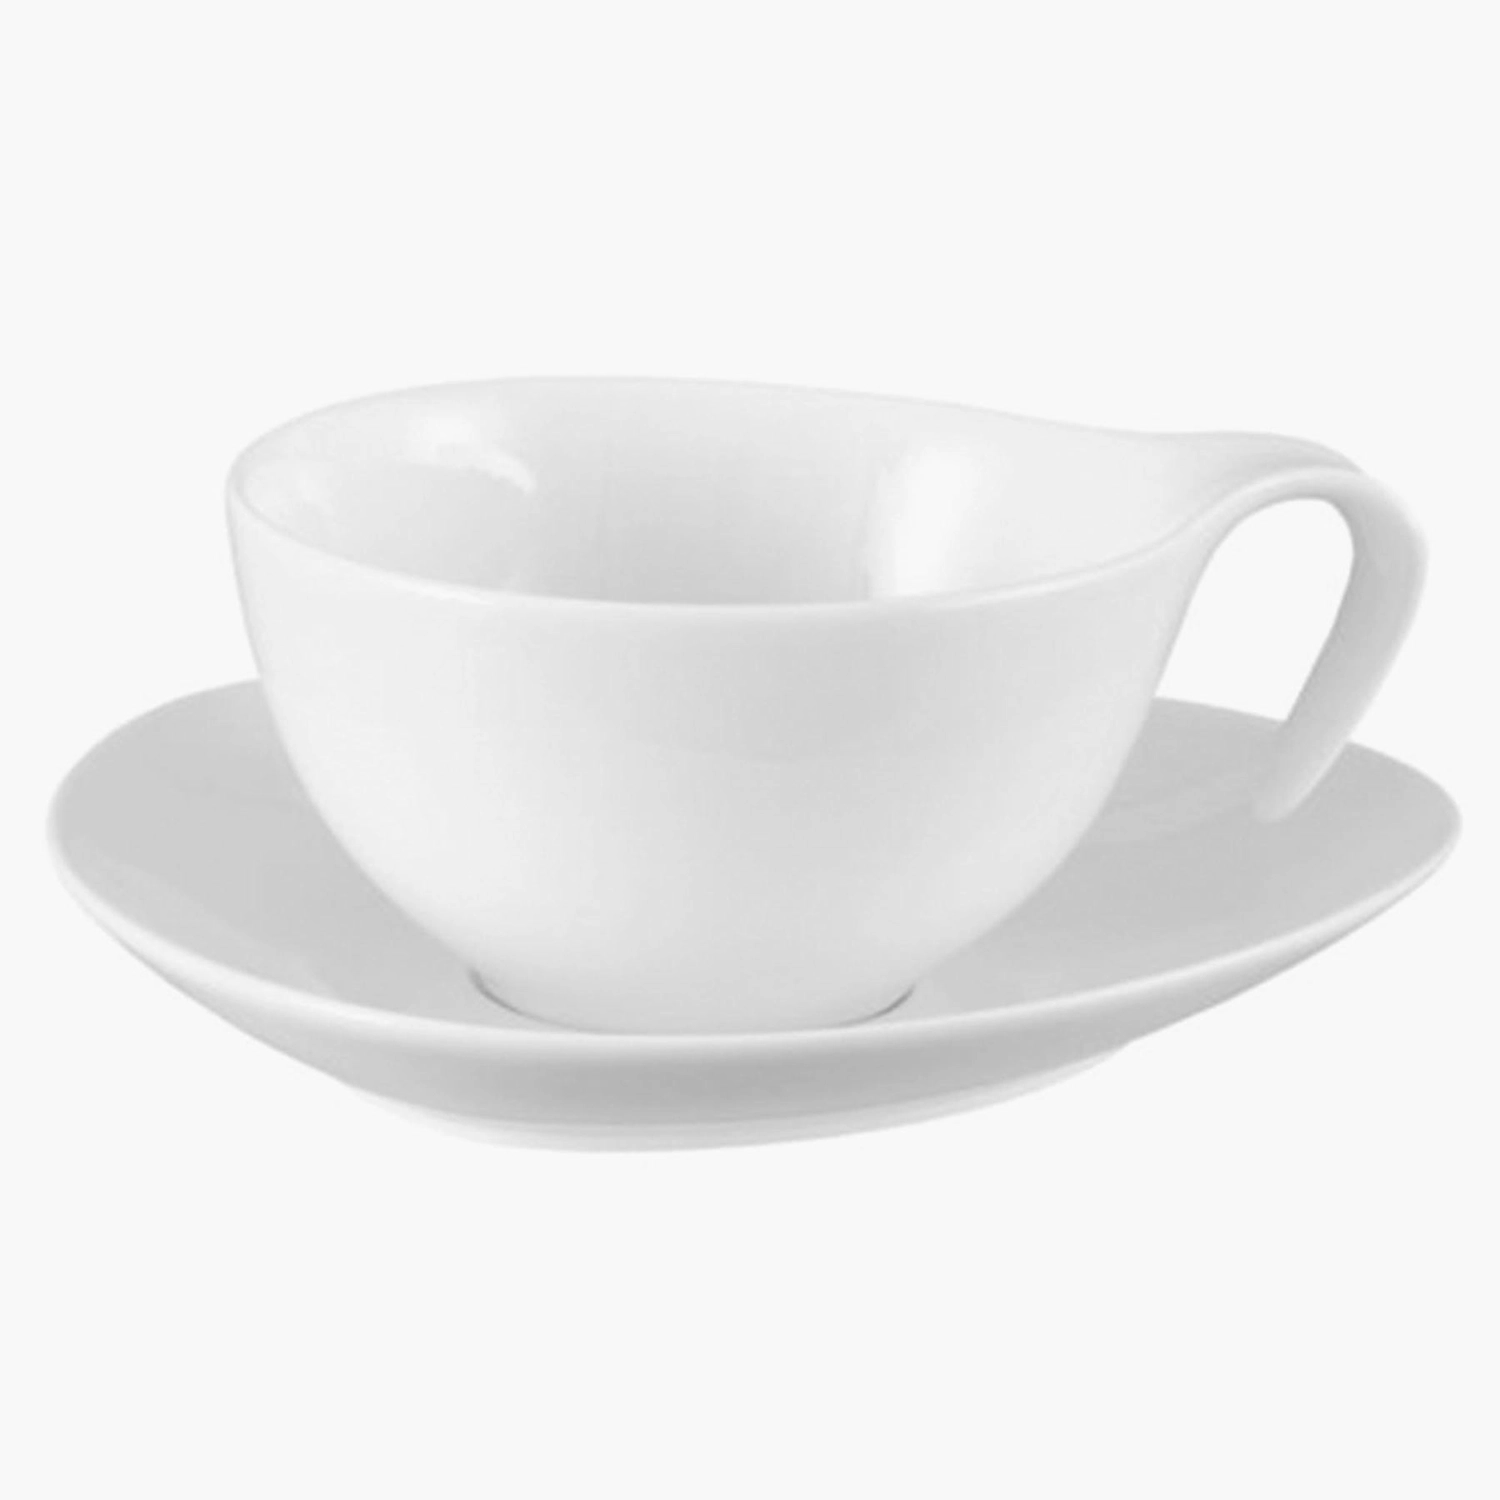 Unique Design Porcelain Espresso Cups Saucers Set Drinkware